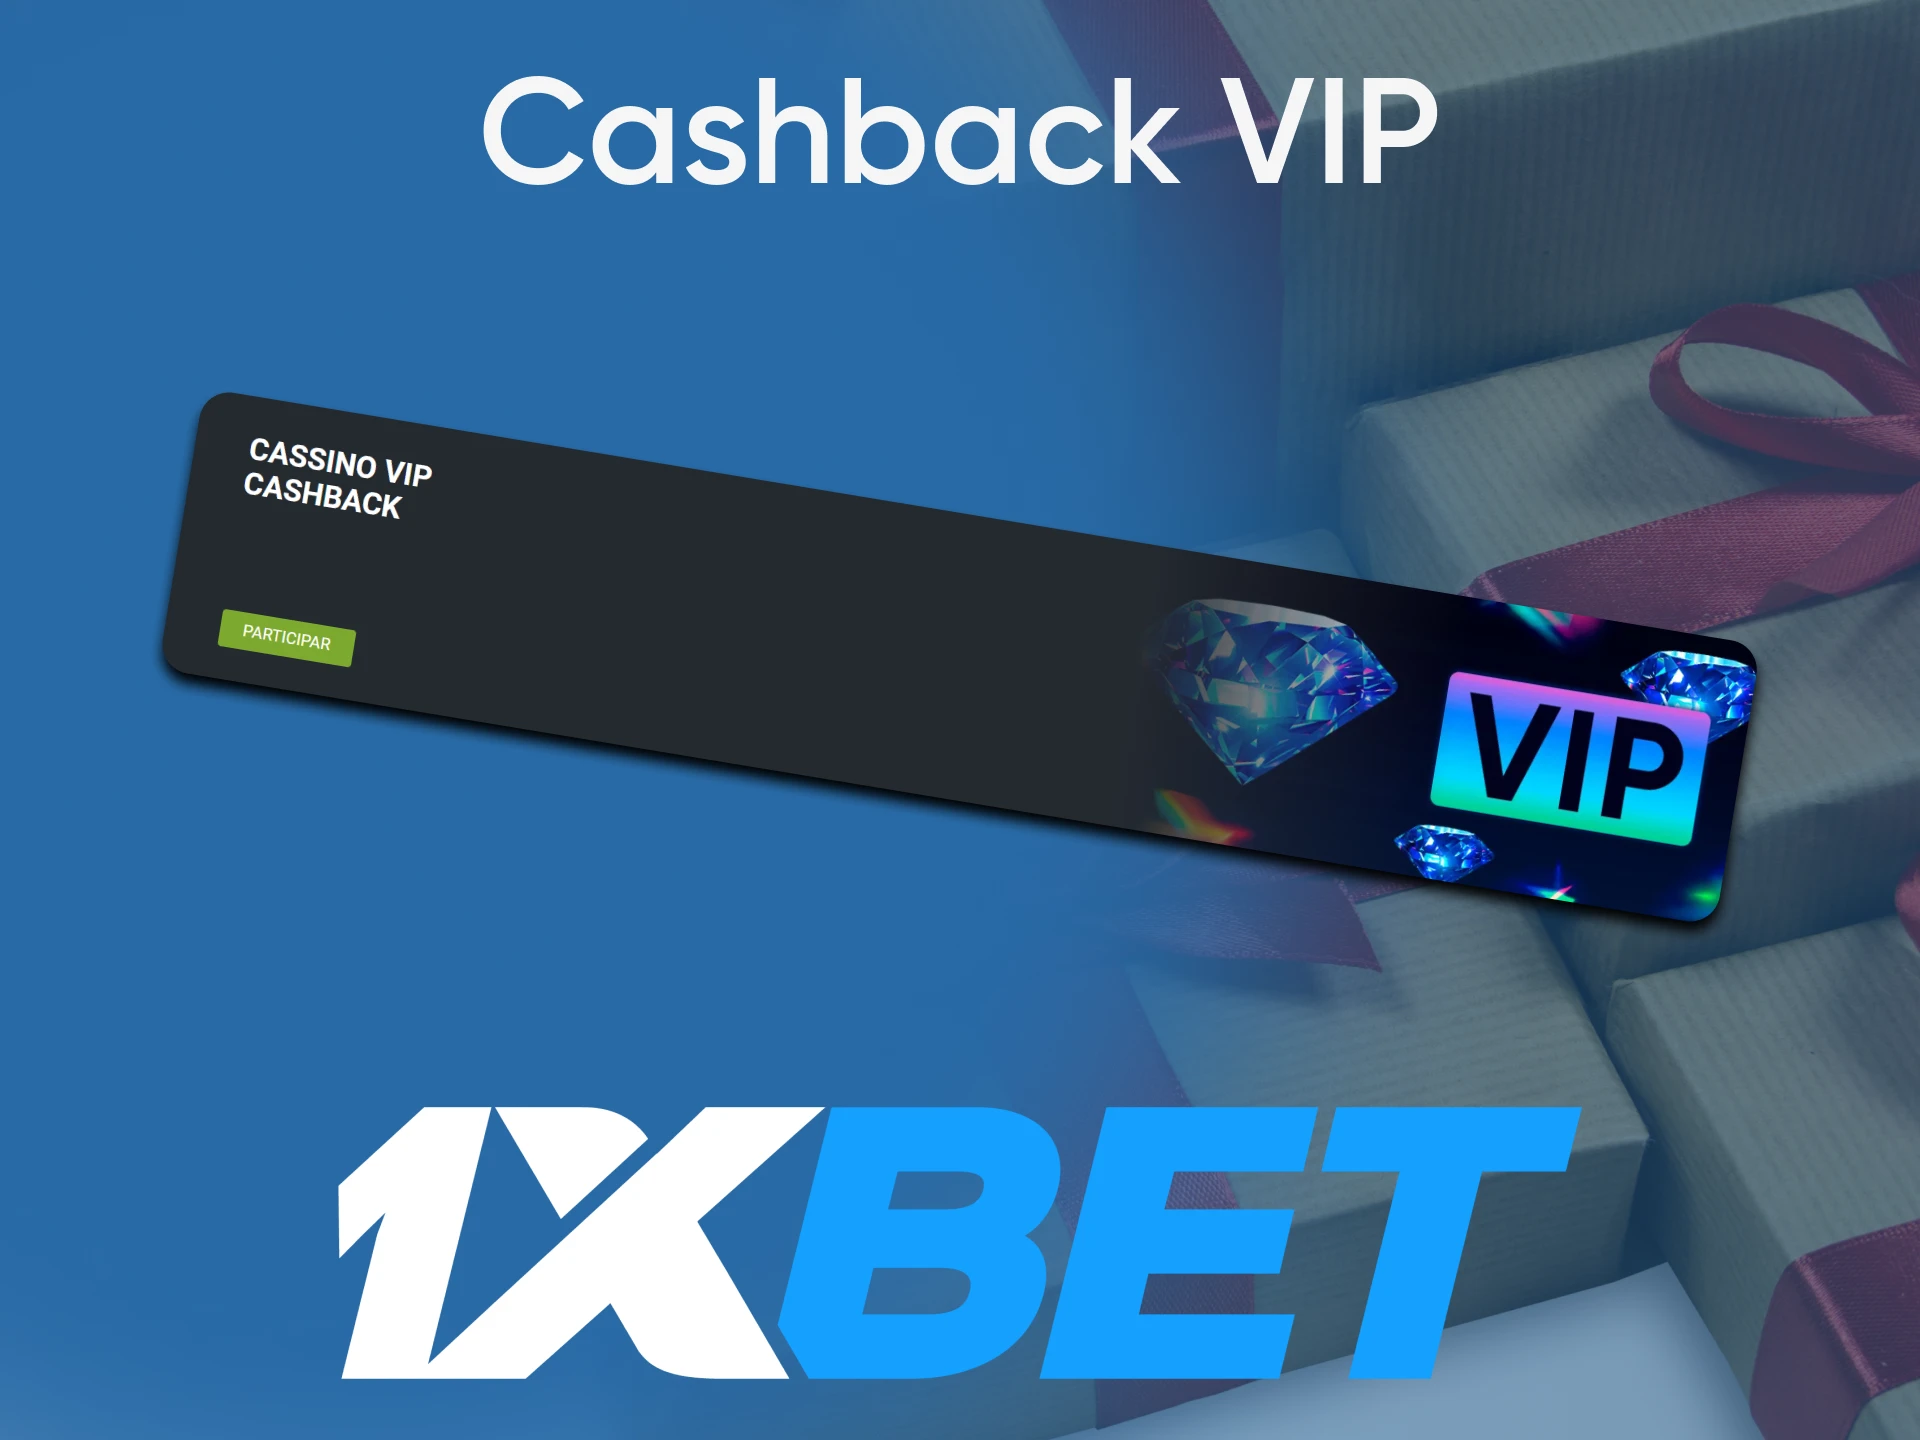 O Premium Cashback está disponível para os membros VIP da 1xBet.